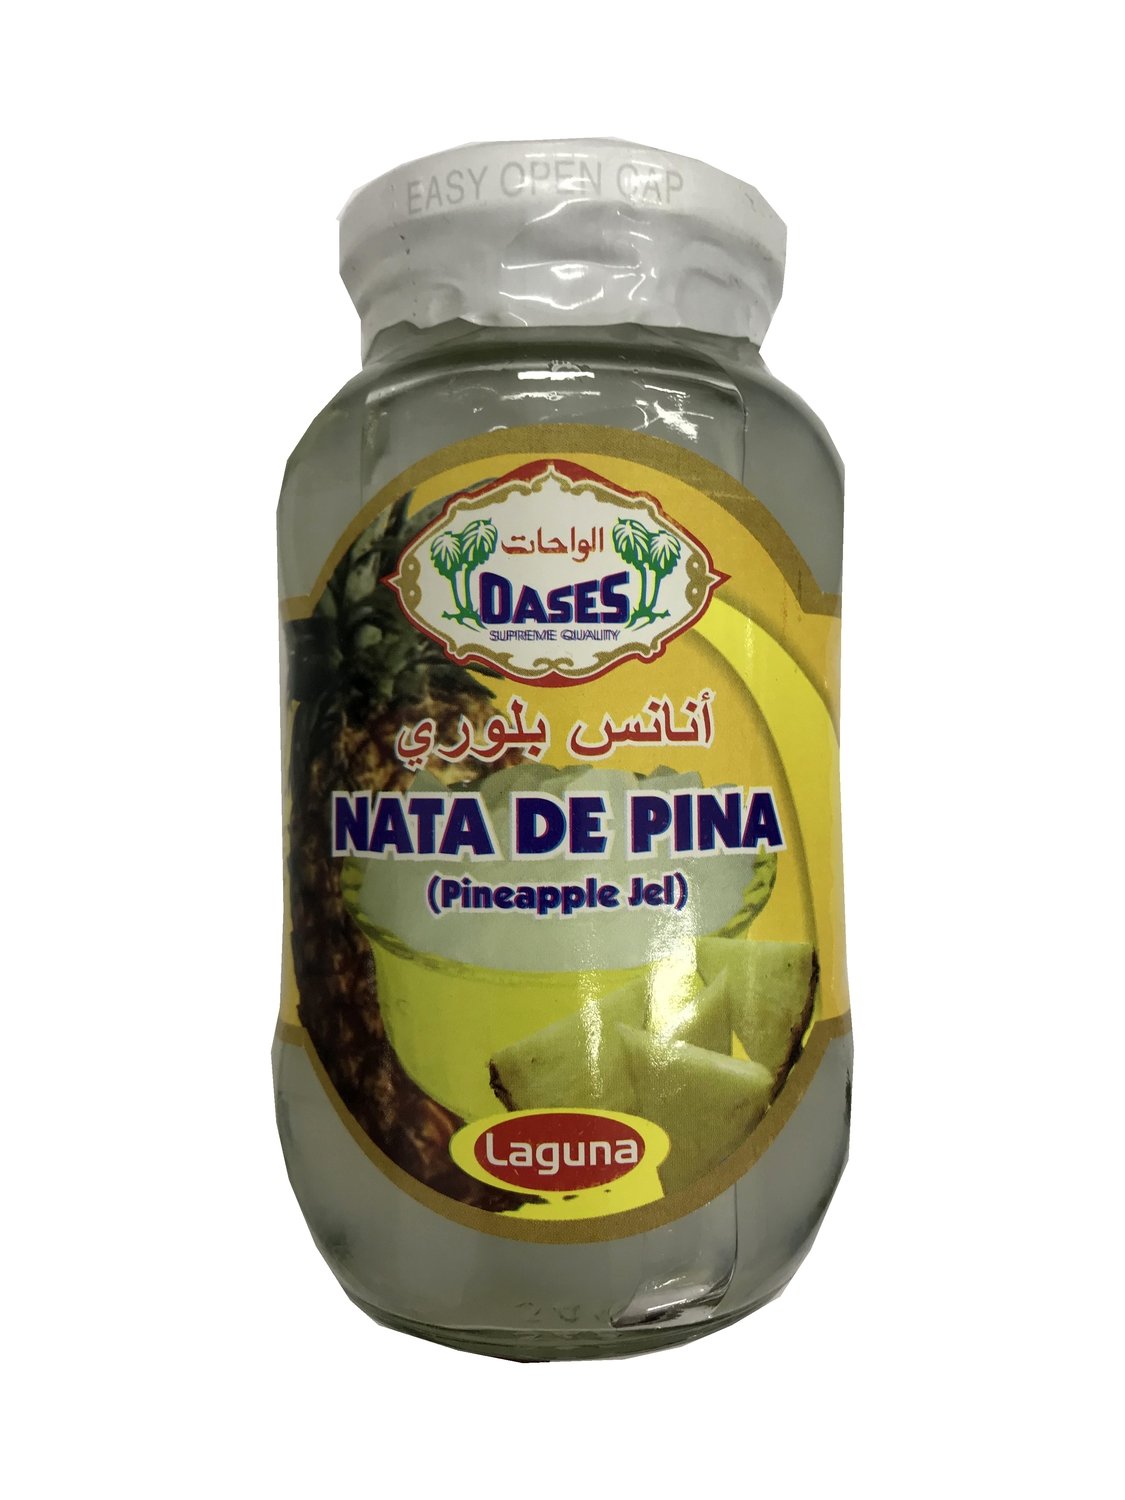 Oases Nata De Pina (Pineapple Jel) 340g